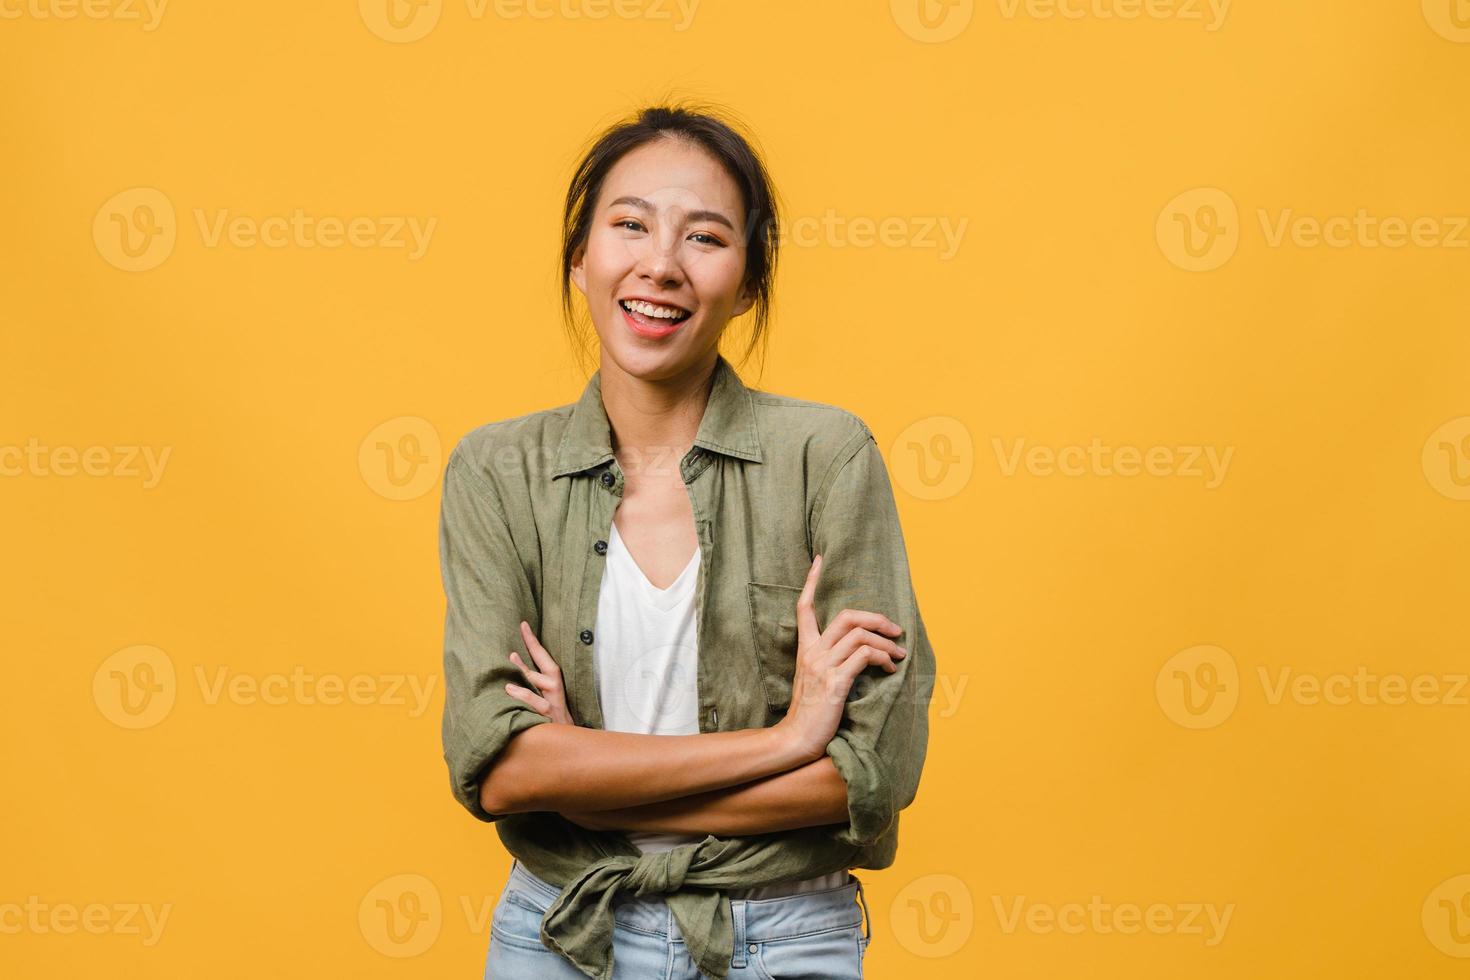 Retrato de joven asiática con expresión positiva, brazos cruzados, sonrisa amplia, vestida con ropa casual y mirando a cámara sobre fondo amarillo. feliz adorable mujer alegre se regocija con el éxito. foto